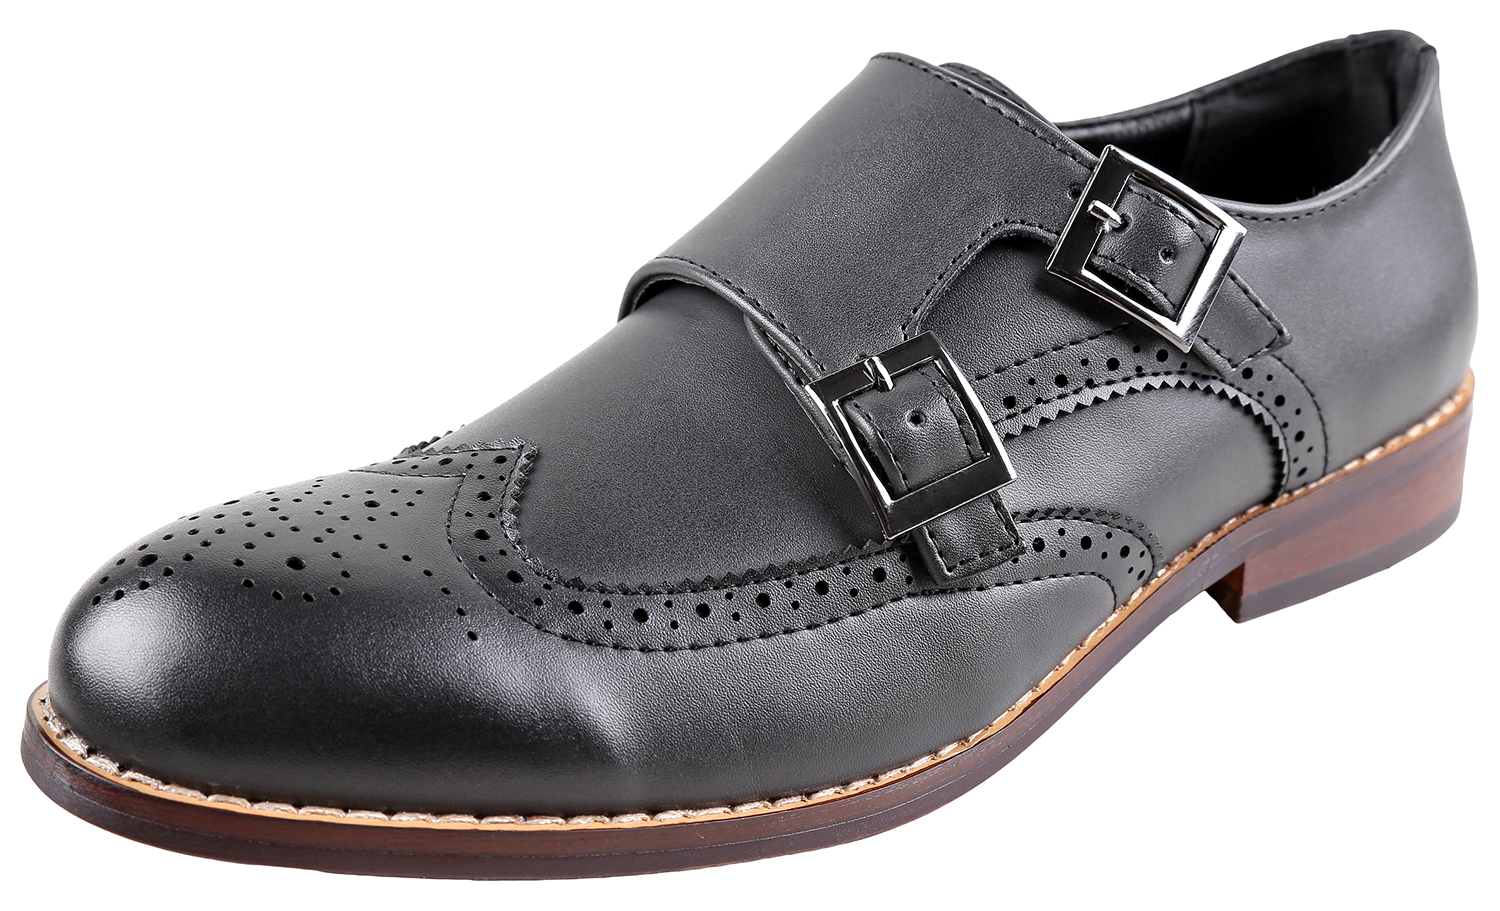 Urban Fox Allen Men's Dress Shoe | Double Monk Strap | Brogue | Wingtip Shoes for Men | Black 13 M US - image 1 of 7